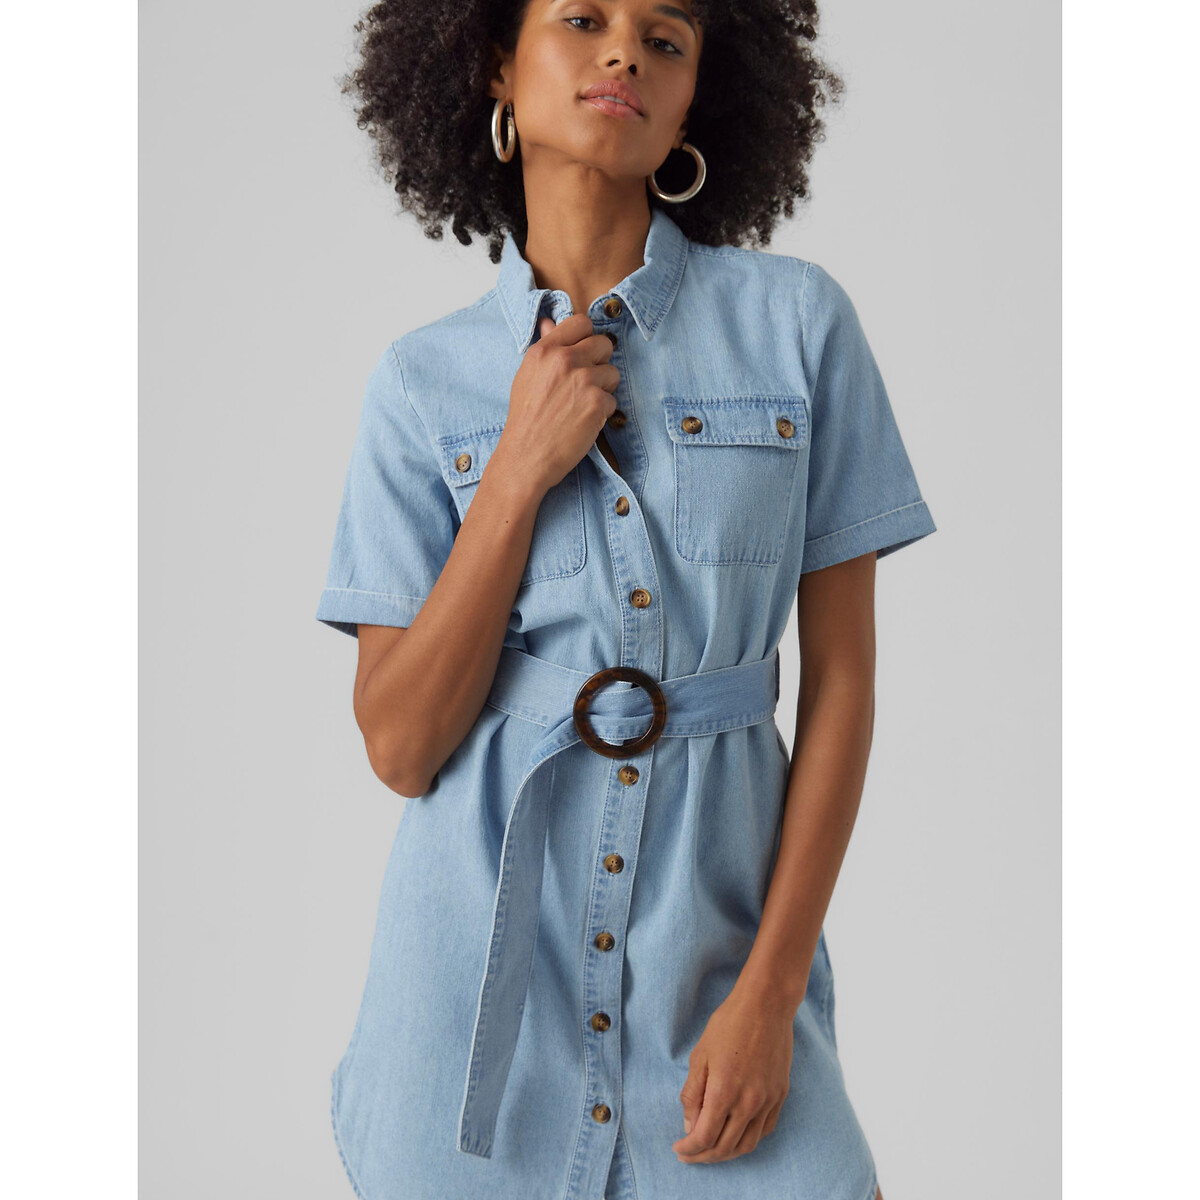 Платье-рубашка Прямое с поясом S синий LaRedoute, размер S - фото 2